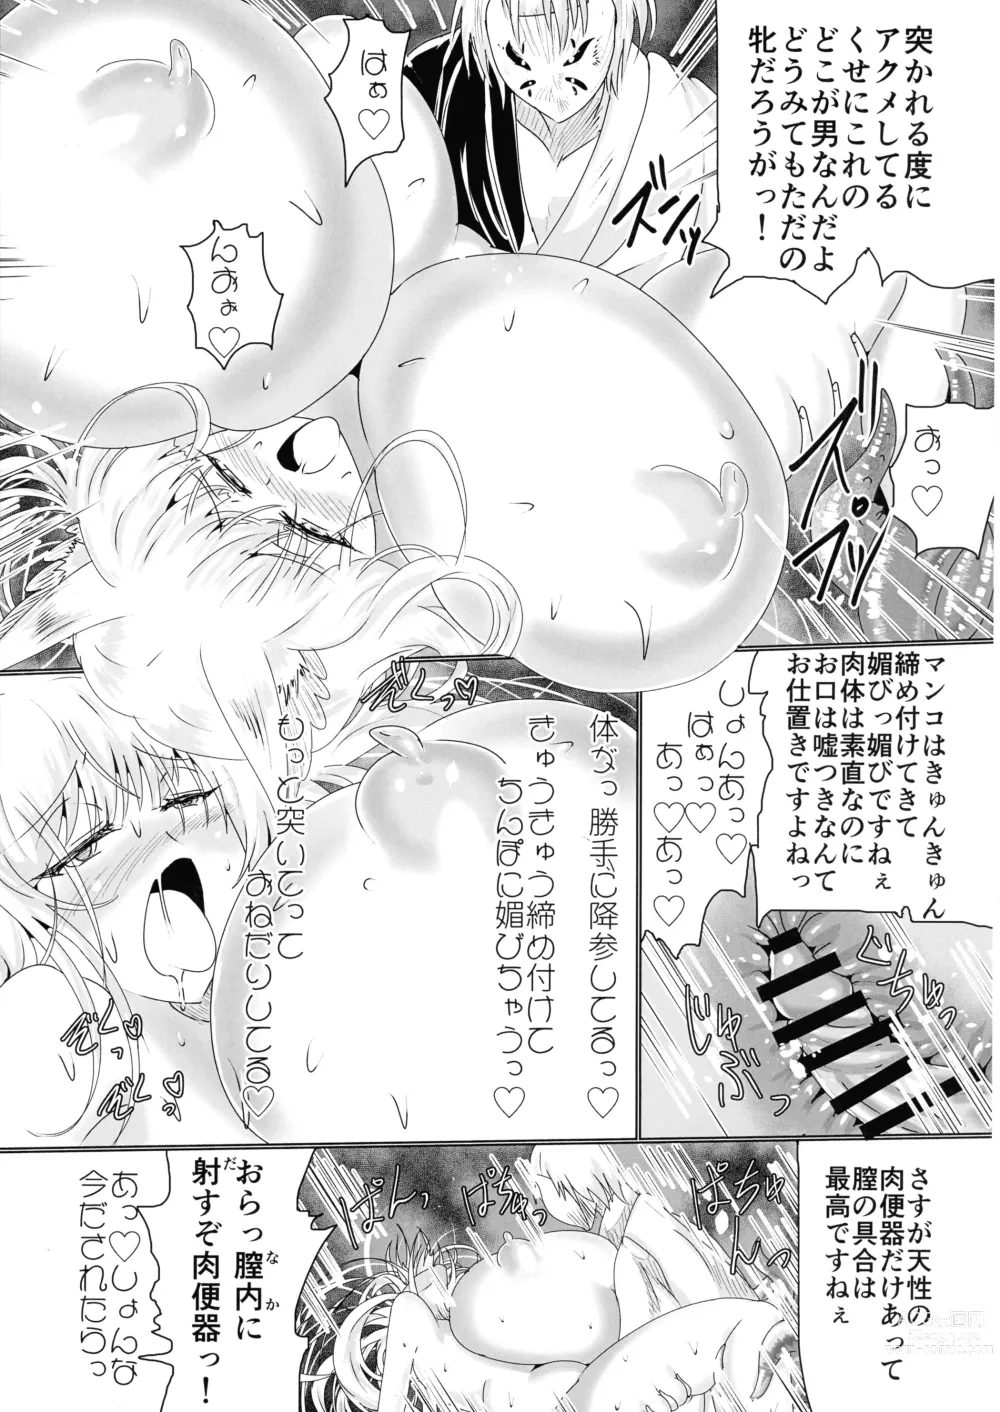 Page 66 of doujinshi Hako Tenjin